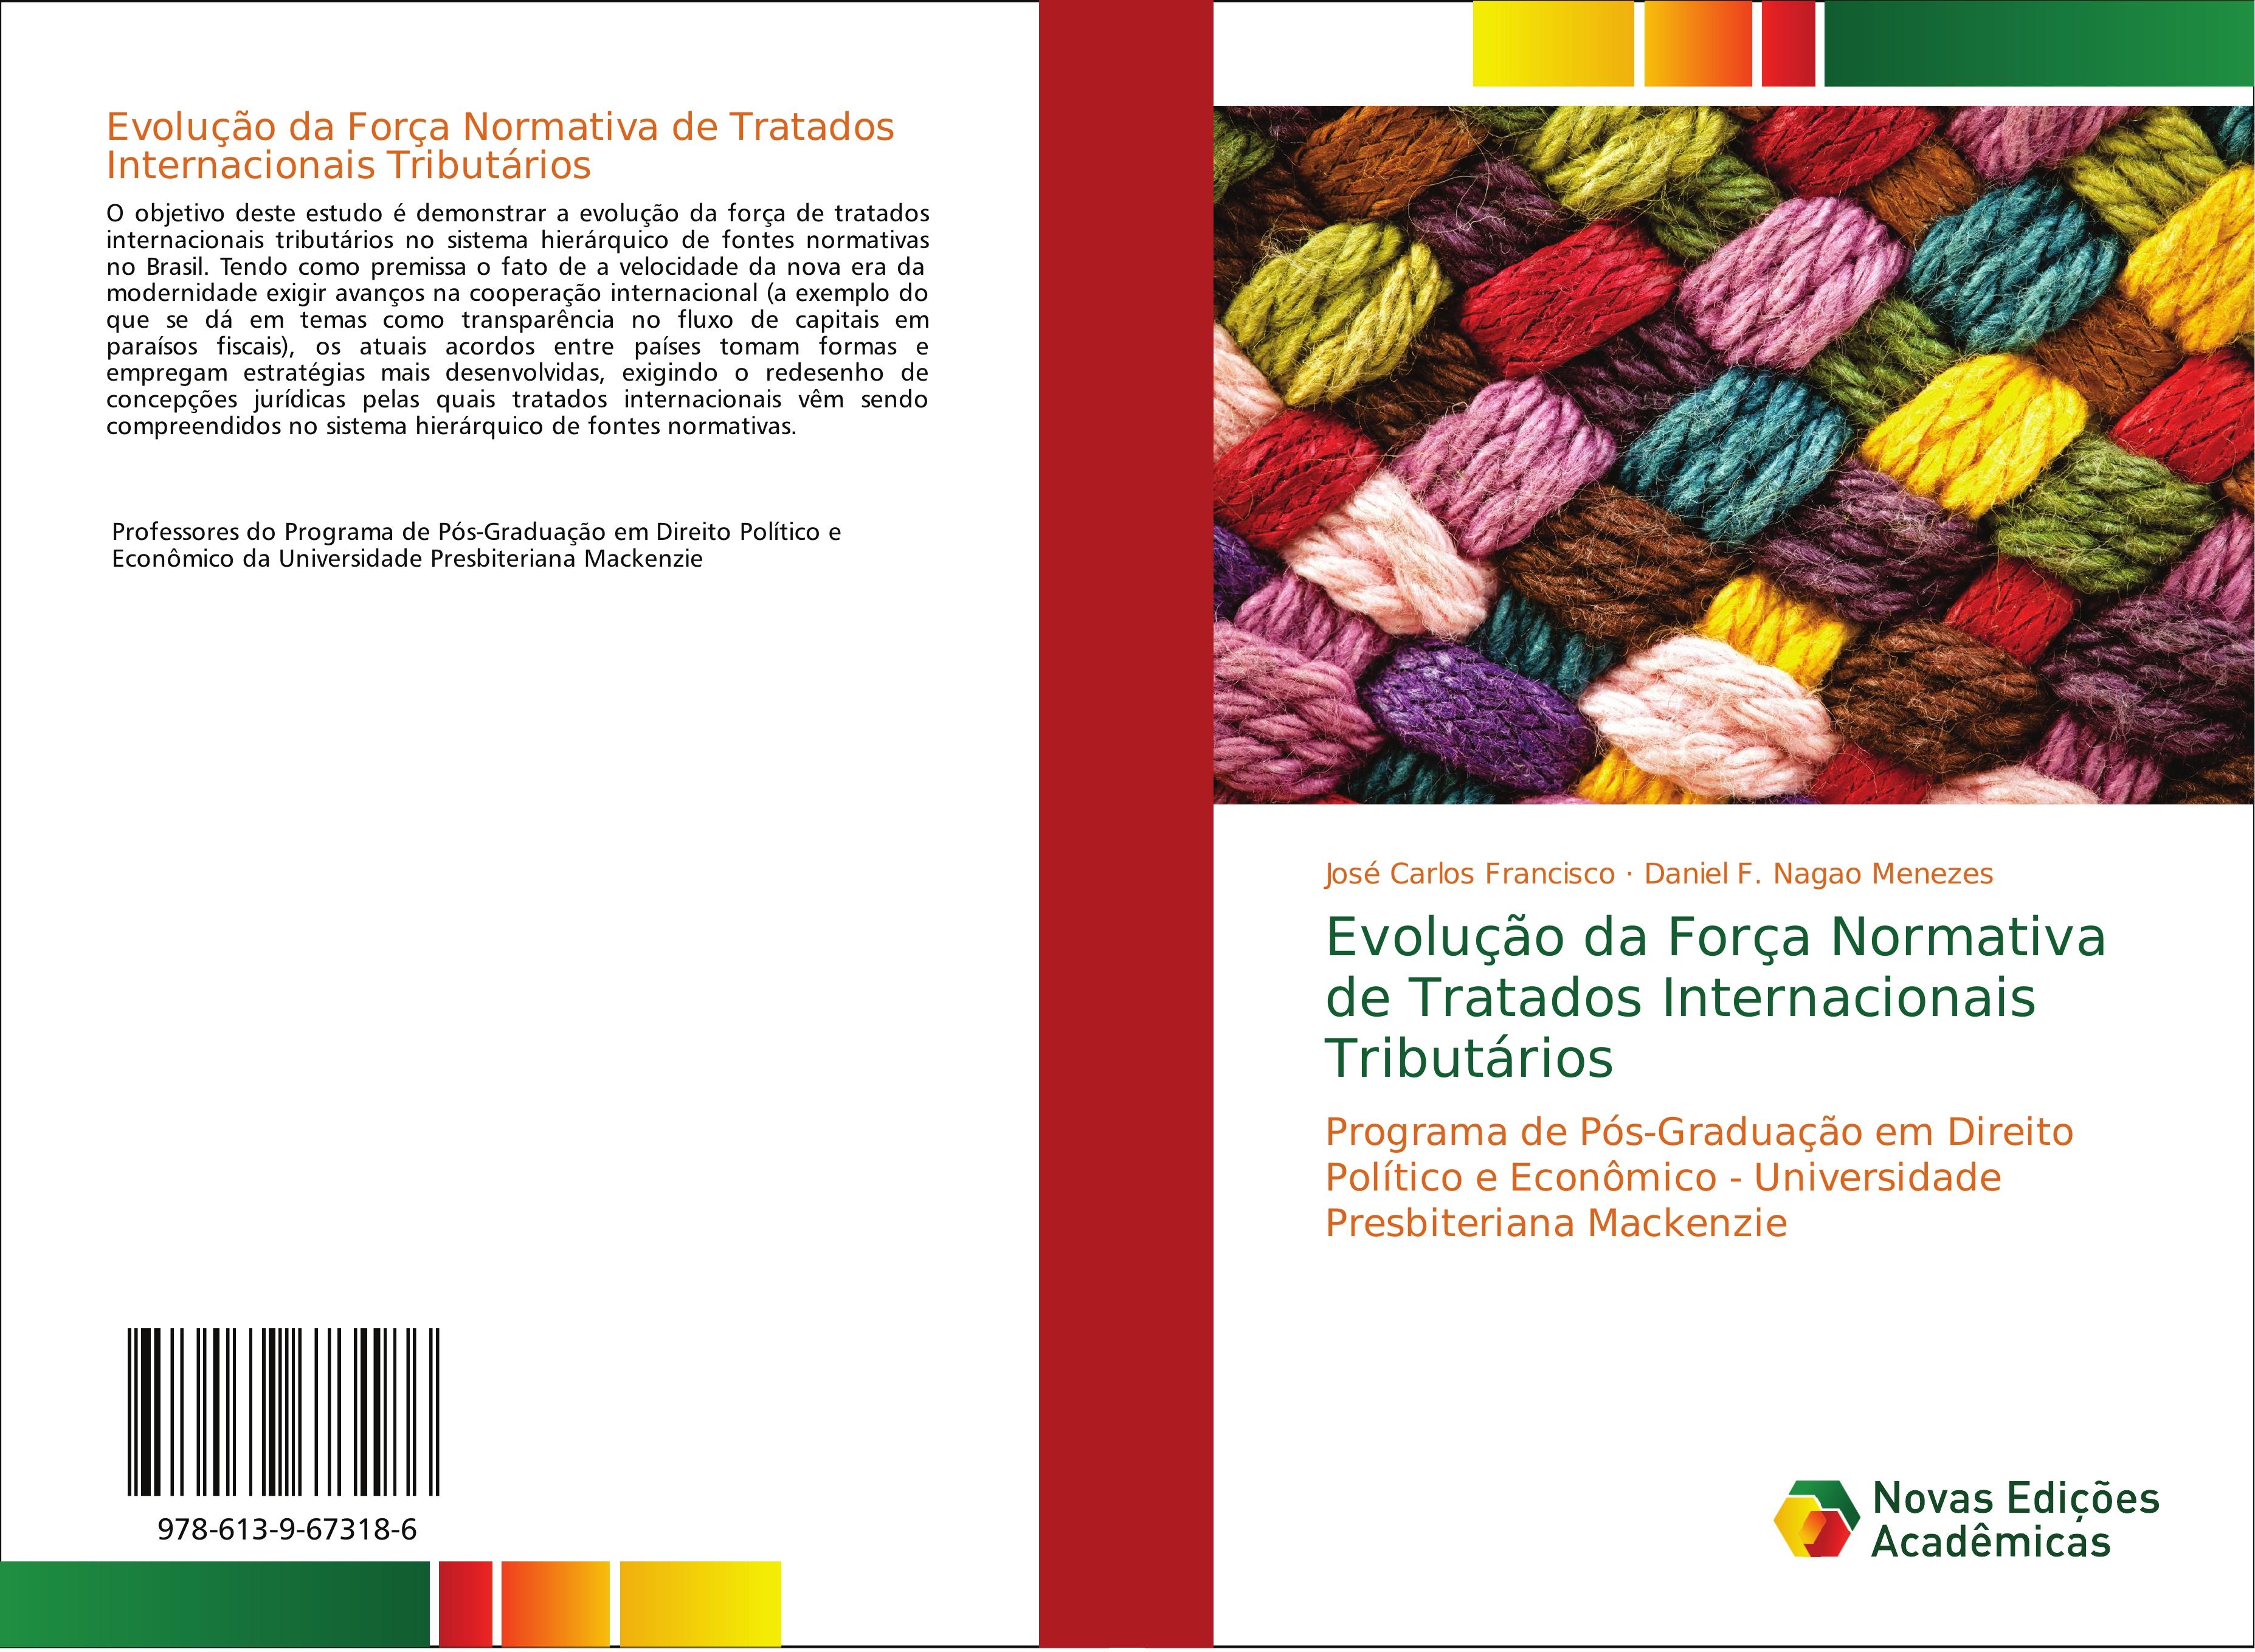 Evolução da Força Normativa de Tratados Internacionais Tributários - José Carlos Francisco Daniel F. Nagao Menezes